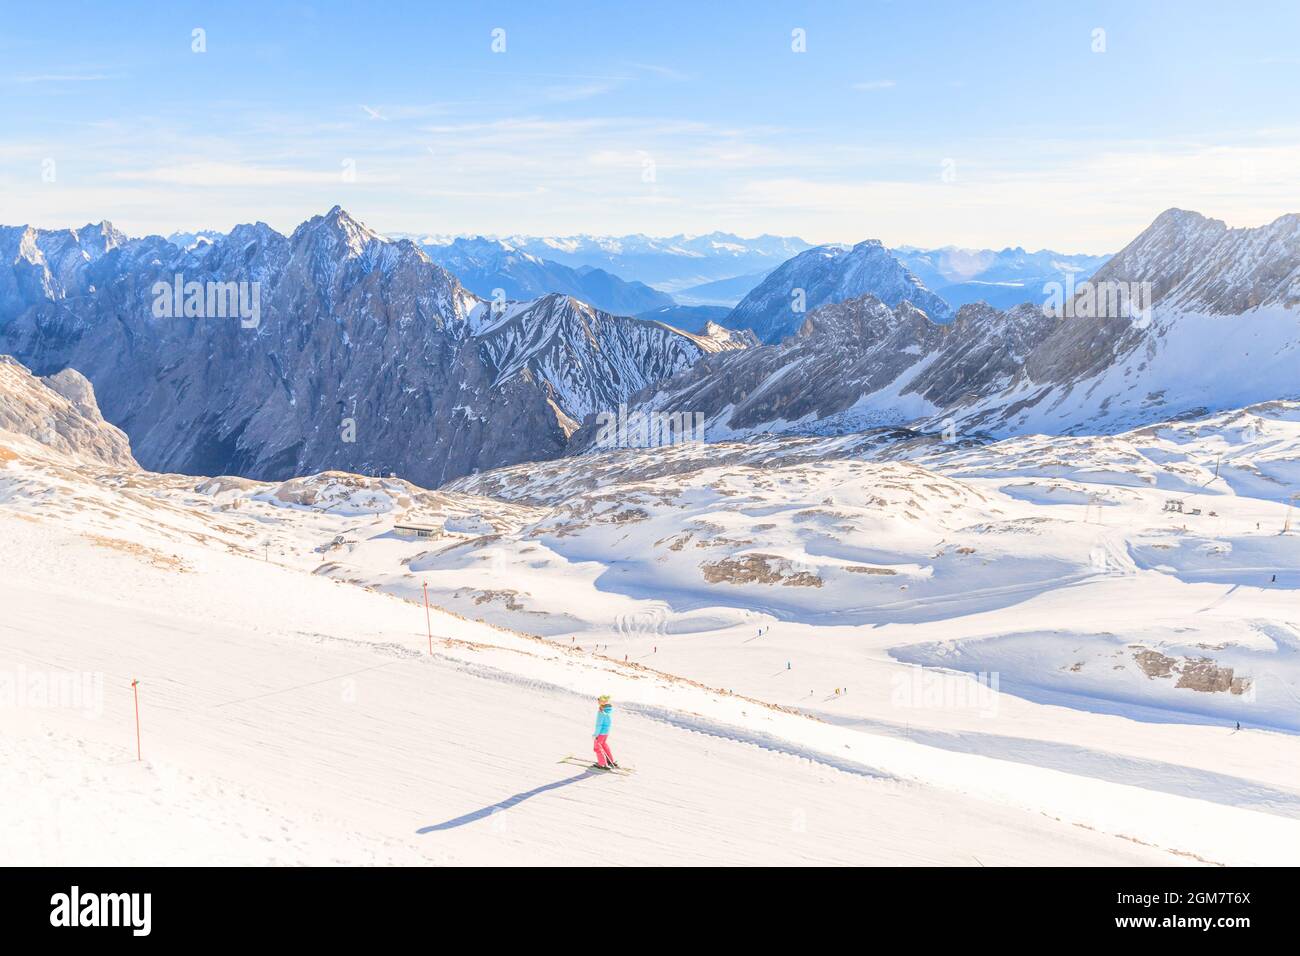 Station de ski du glacier de la Zugspitze dans les Alpes bavaroises, l'Allemagne. La Zugspitze, à 2 962 mètres au-dessus du niveau de la mer, est la plus haute montagne d'Allemagne Banque D'Images